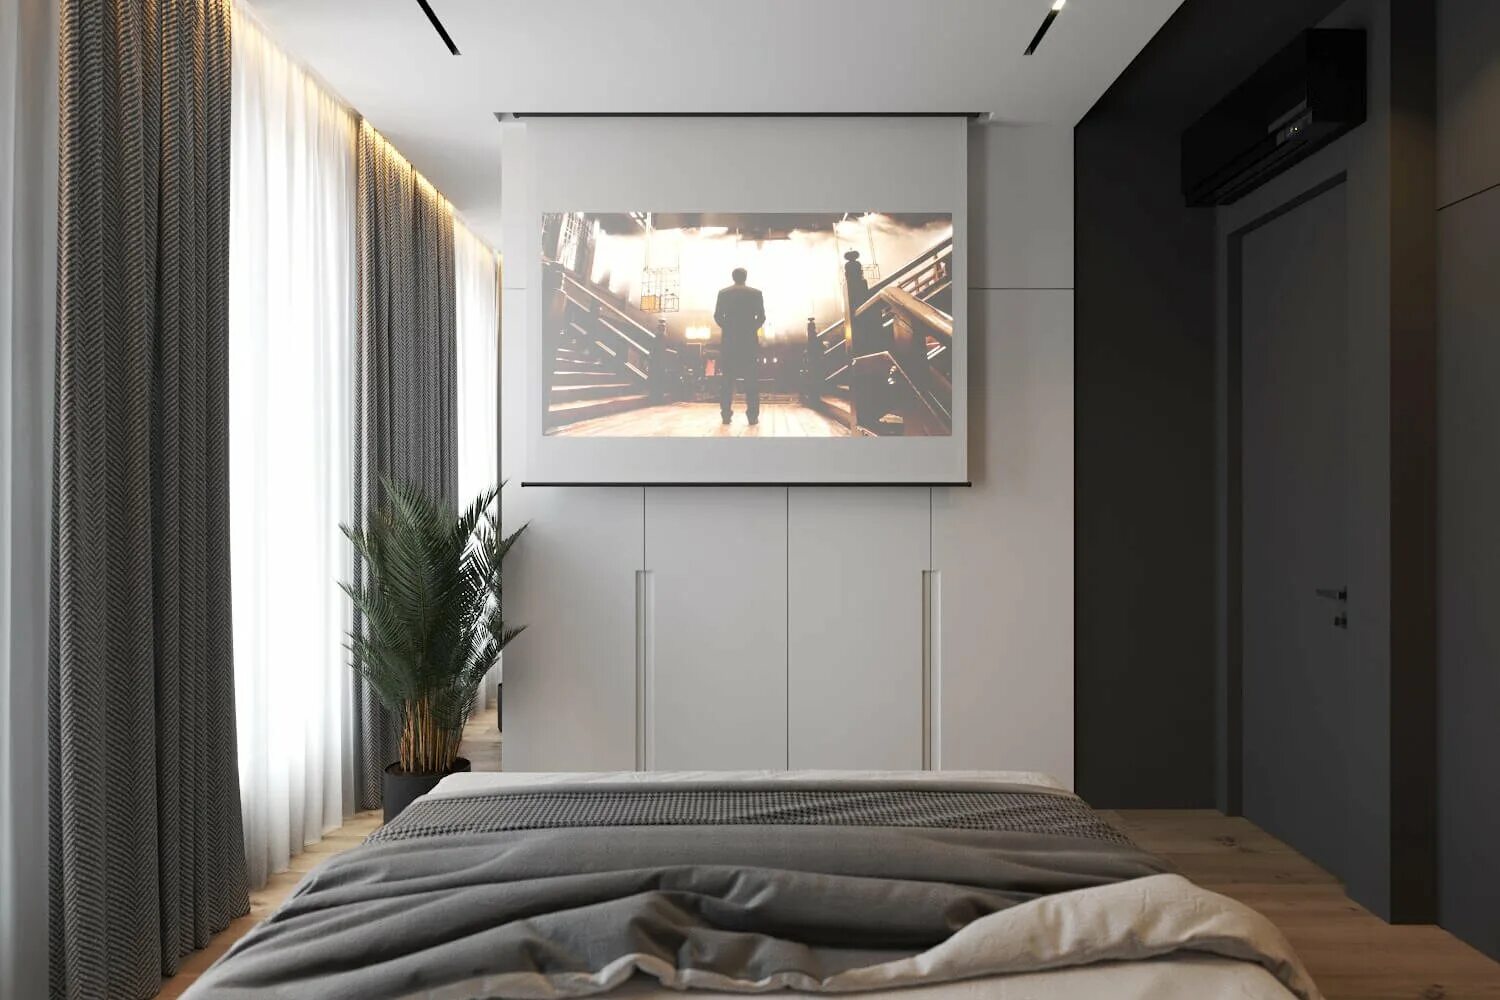 Телевизор в маленькой комнате. Вандер парк Геометриум. Телевизор в спальне. Спальня с большим телевизором. Проектор в интерьере спальни.